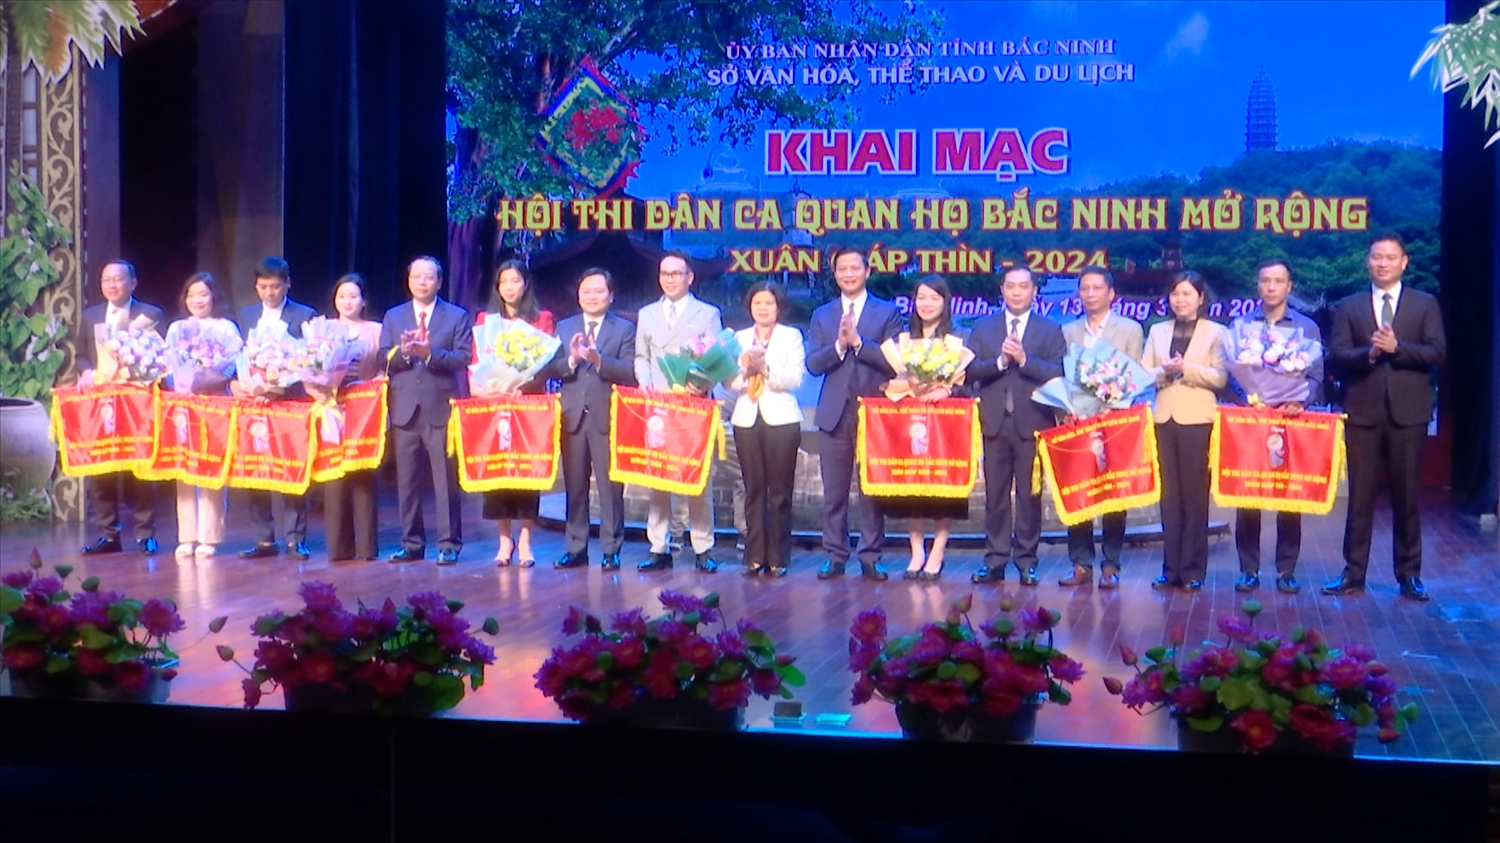 Lễ khai mạc Hội thi Dân ca Quan họ Bắc Ninh mở rộng Xuân Giáp Thìn 2024 tại Nhà hát Dân ca Quan họ Bắc Ninh.